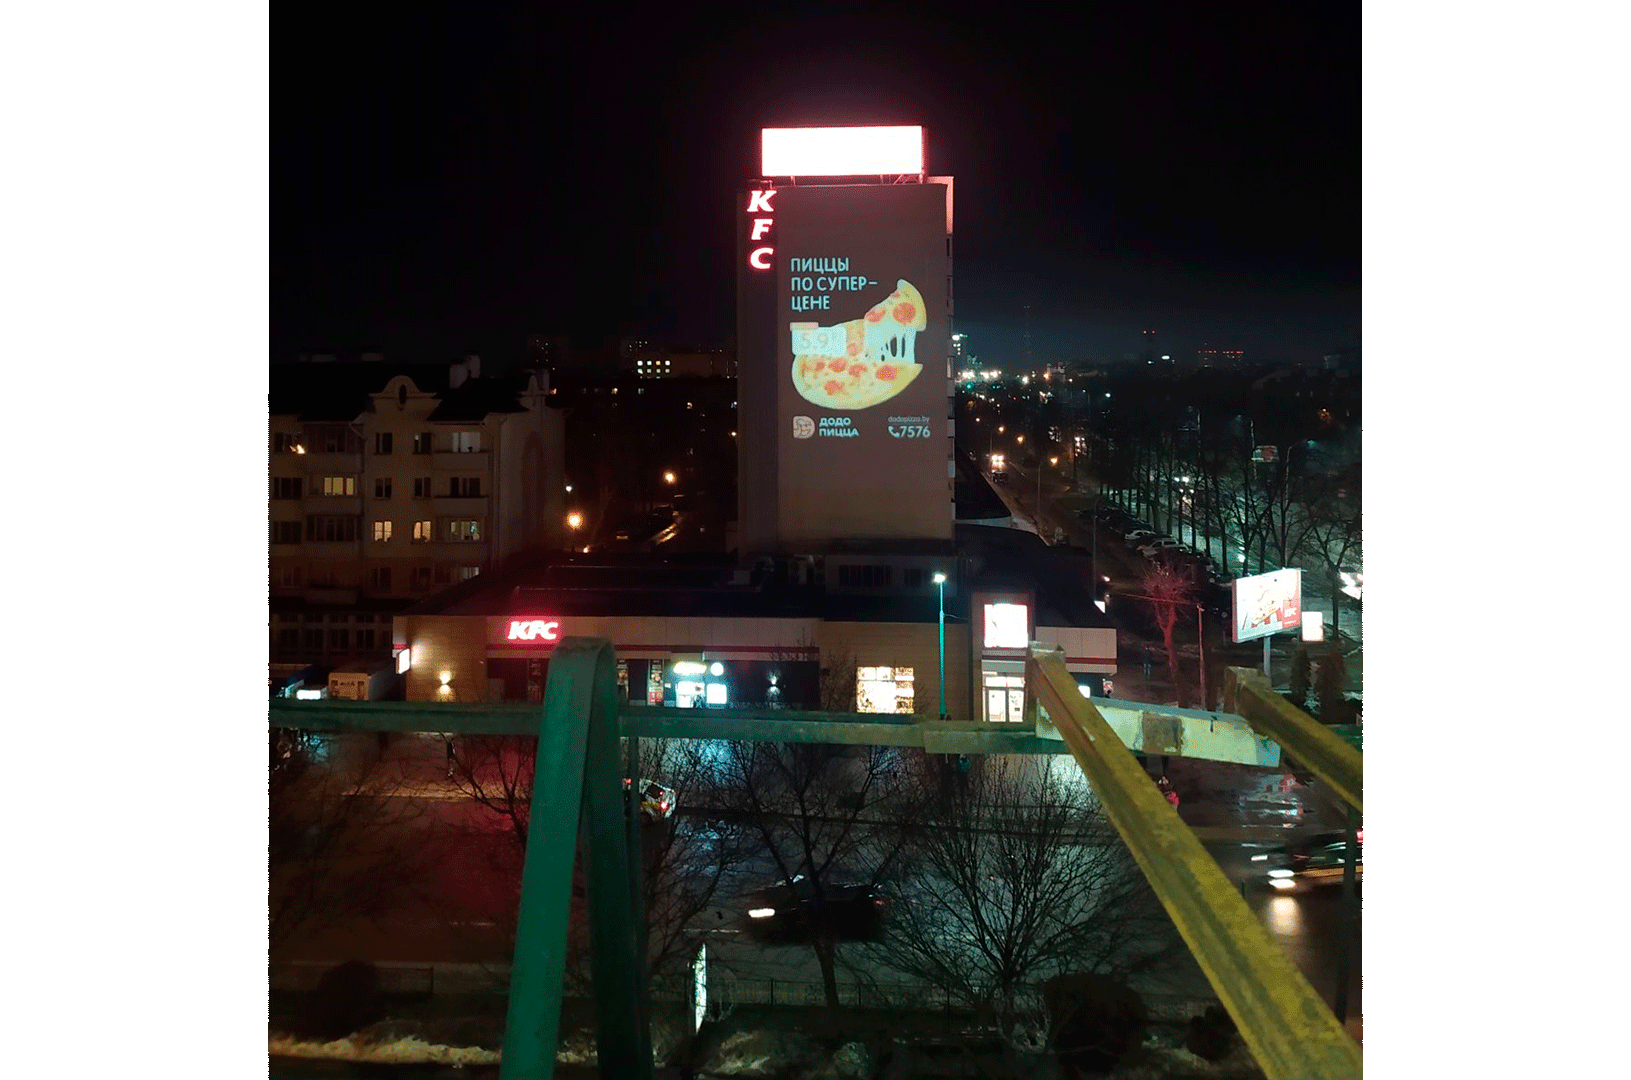 Реклама на фасаде здания. Додо Пицца. <br>ГОБО-проектор GOSLAID 40008, вращающийся, мощностью 400Вт, рассчитан на 9 рекламных слайдов. Полноцветная проекция